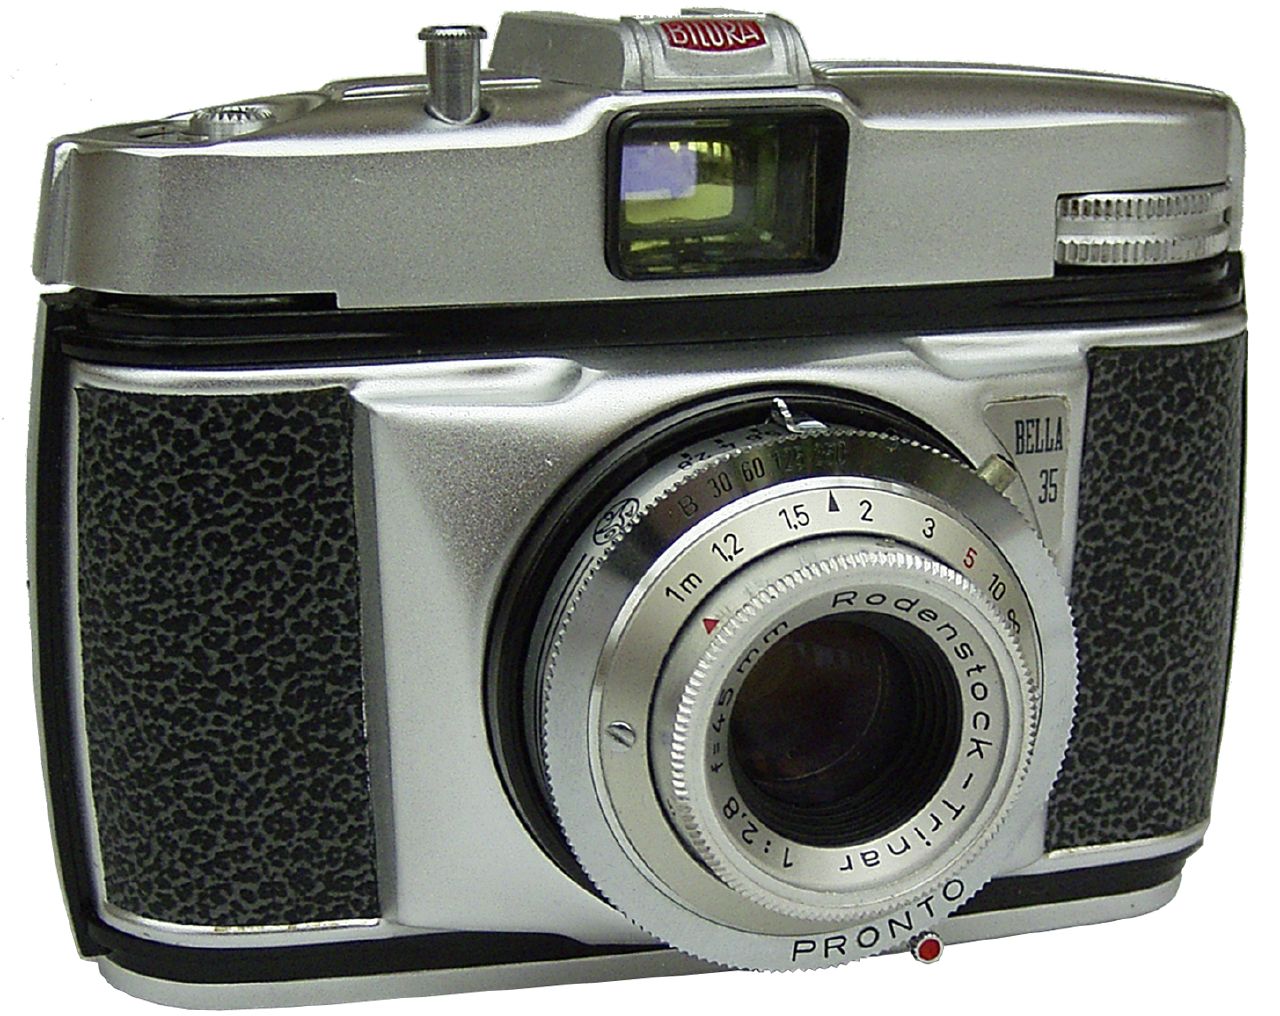 Bella bilora 35mm film camera